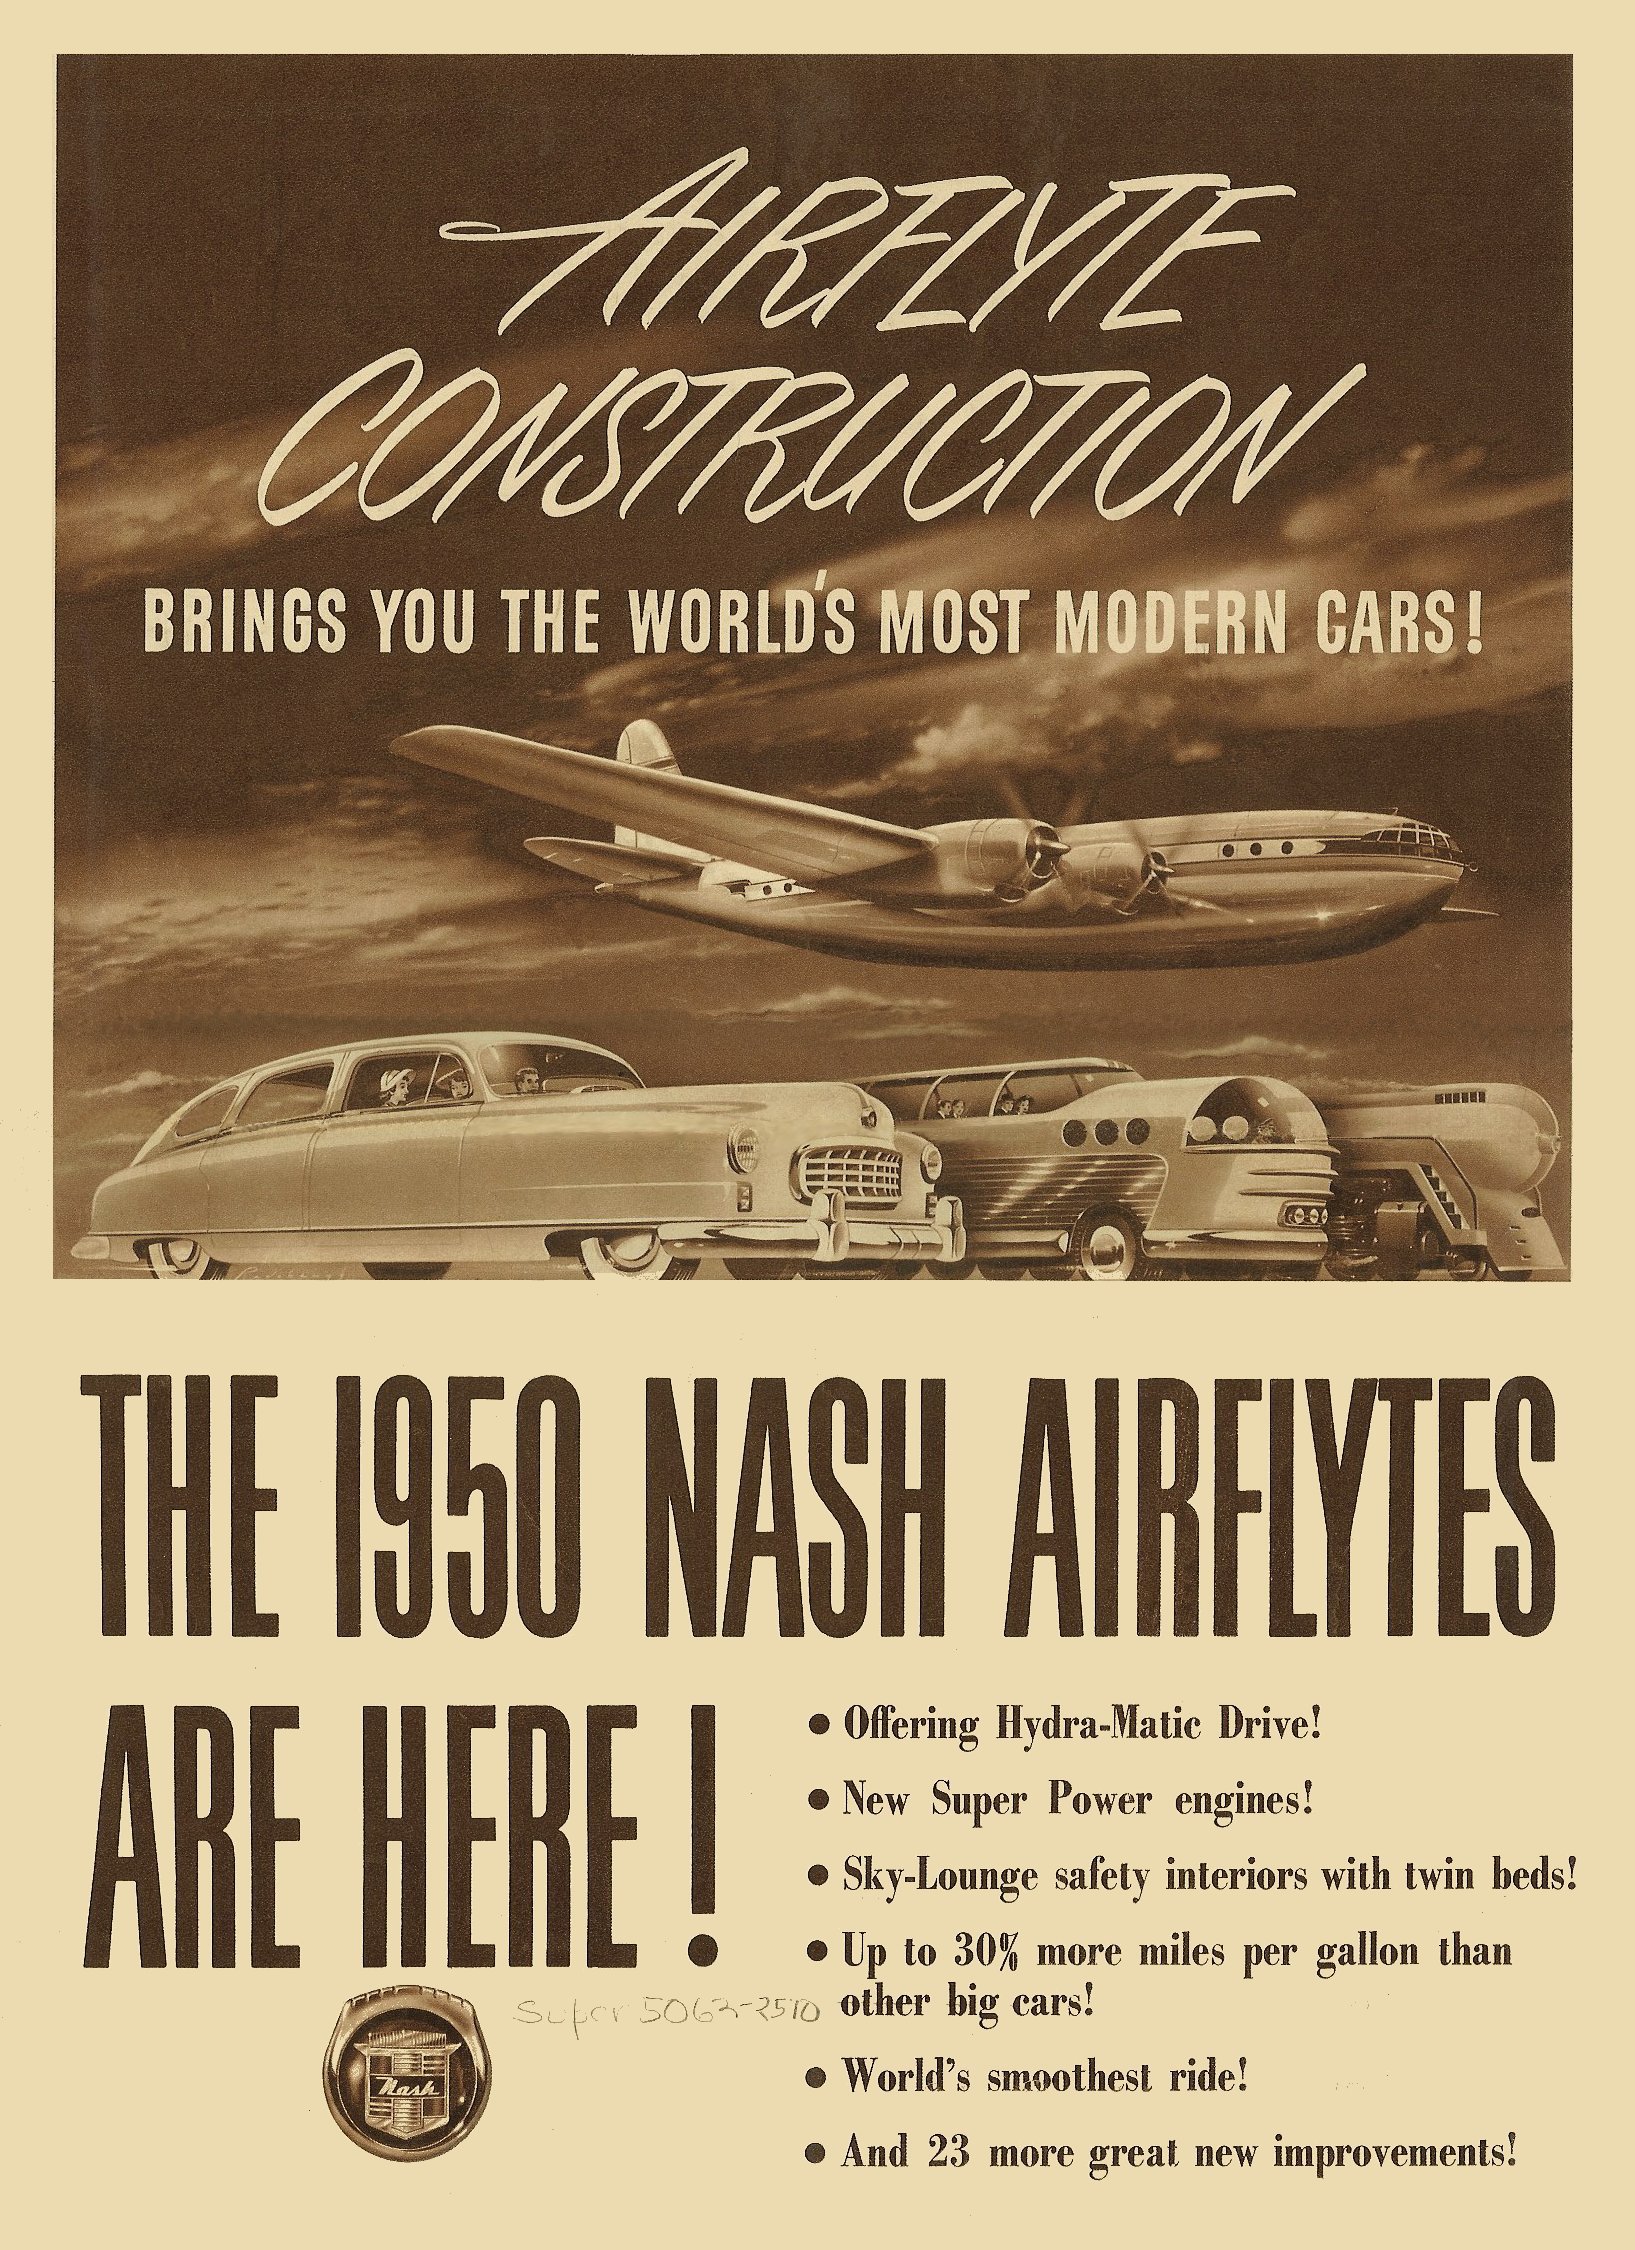 1950 Nash Airflyte #5